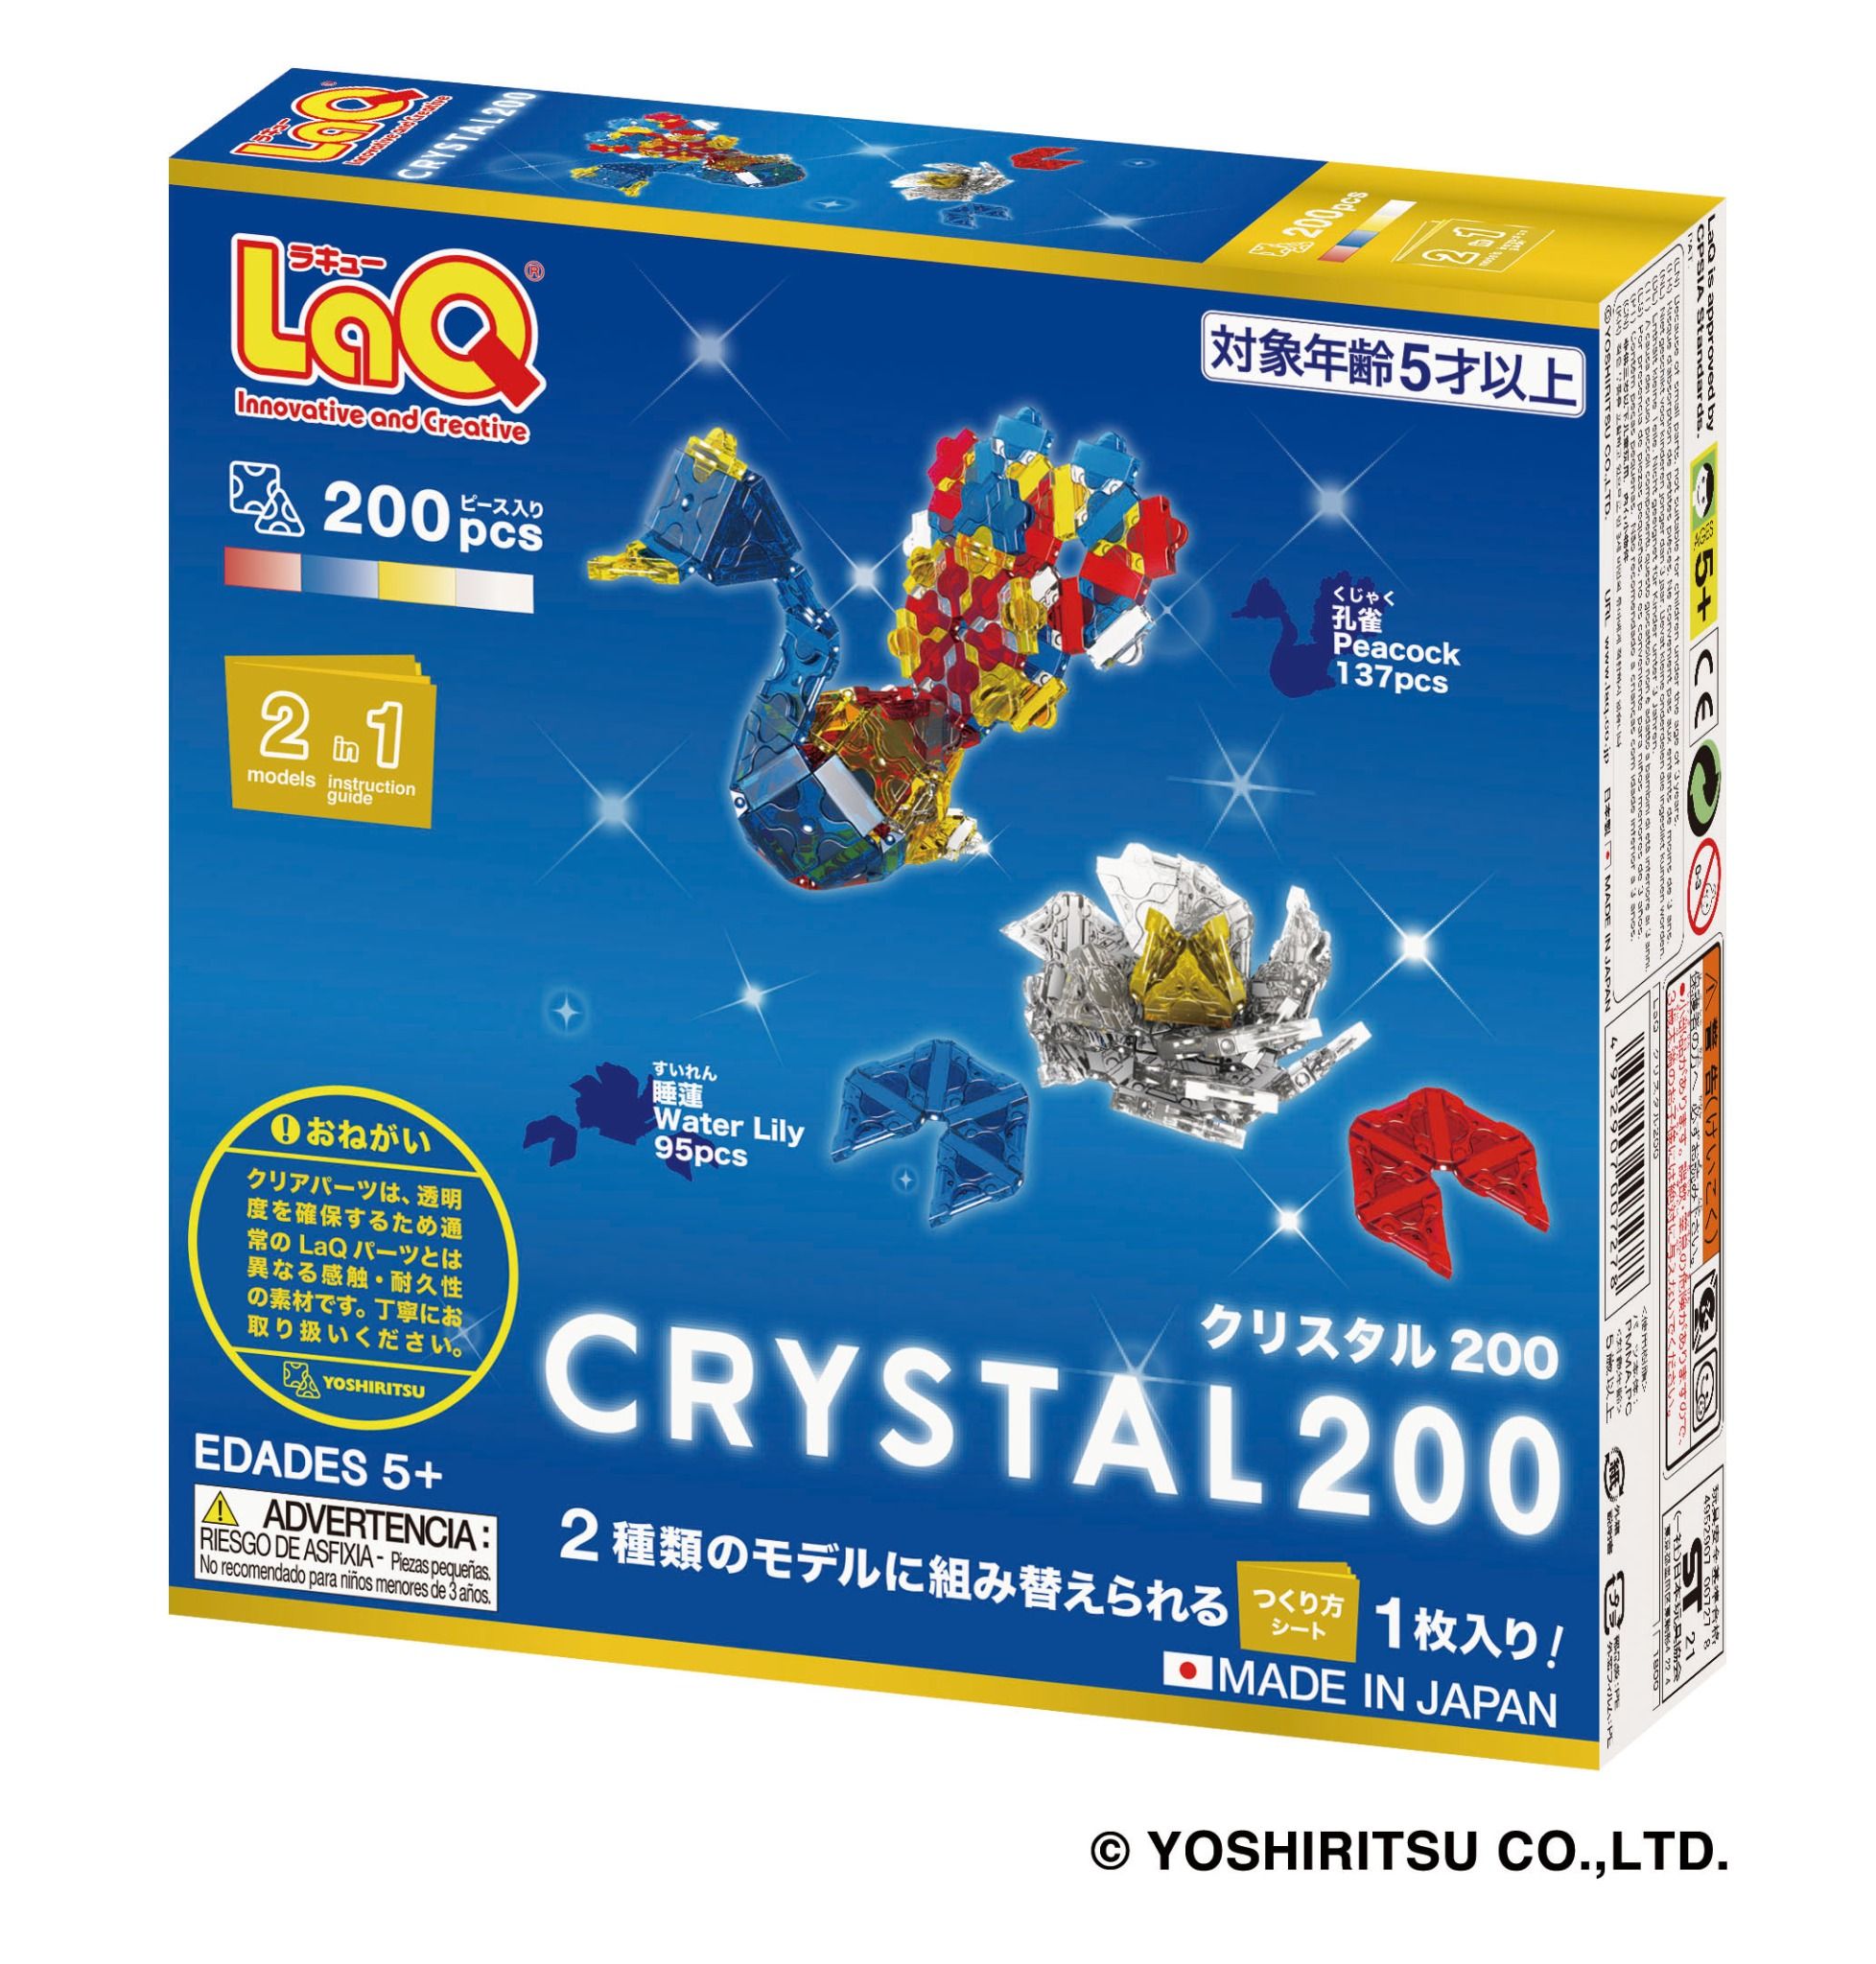  Bộ xếp hình sáng tạo LaQ CRYSTAL 200 - Chủ đề Mảnh ghép trong, 200 mảnh ghép có 4 màu trong suốt (vàng, đỏ, xanh, trắng) 